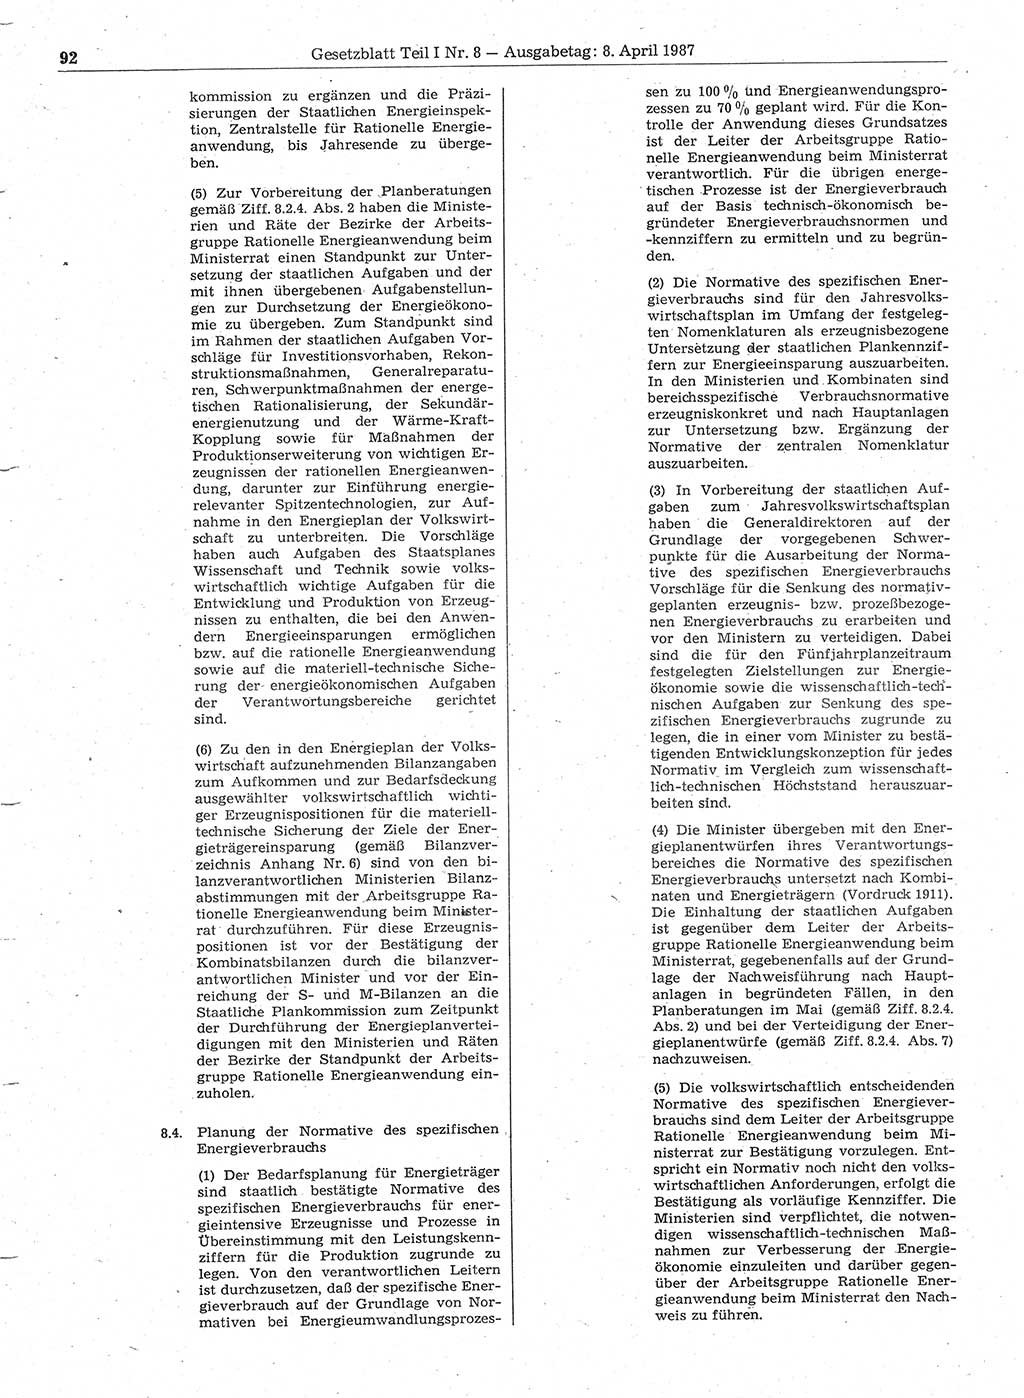 Gesetzblatt (GBl.) der Deutschen Demokratischen Republik (DDR) Teil Ⅰ 1987, Seite 92 (GBl. DDR Ⅰ 1987, S. 92)